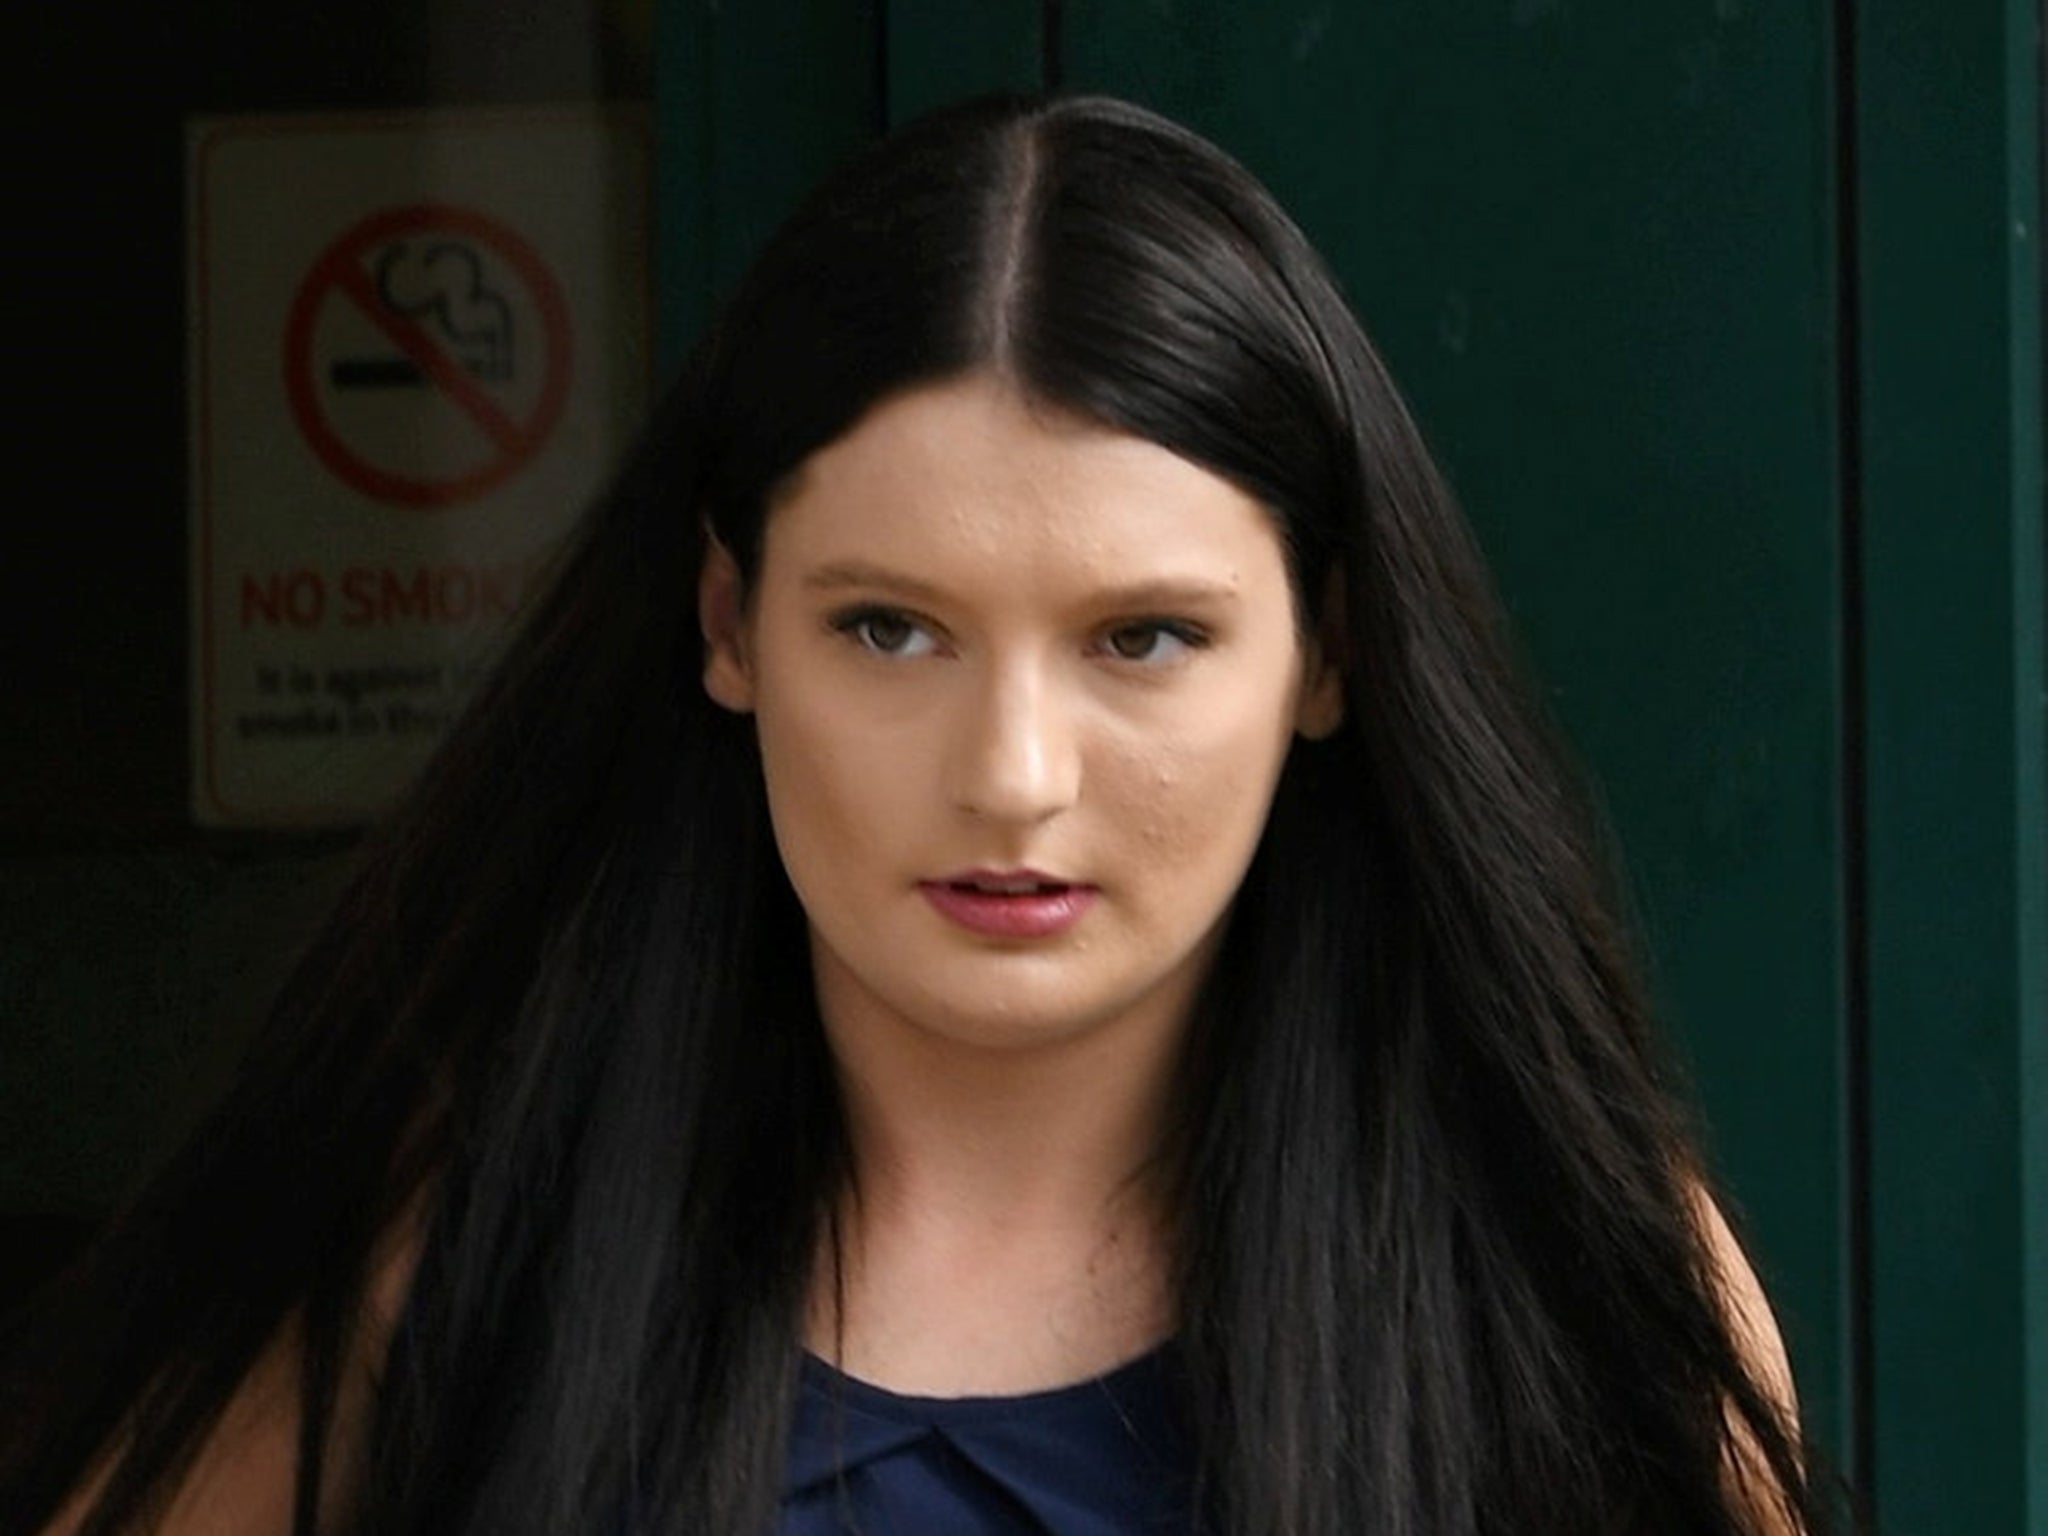 Elizabeth Wilkins, 23, denies the allegations